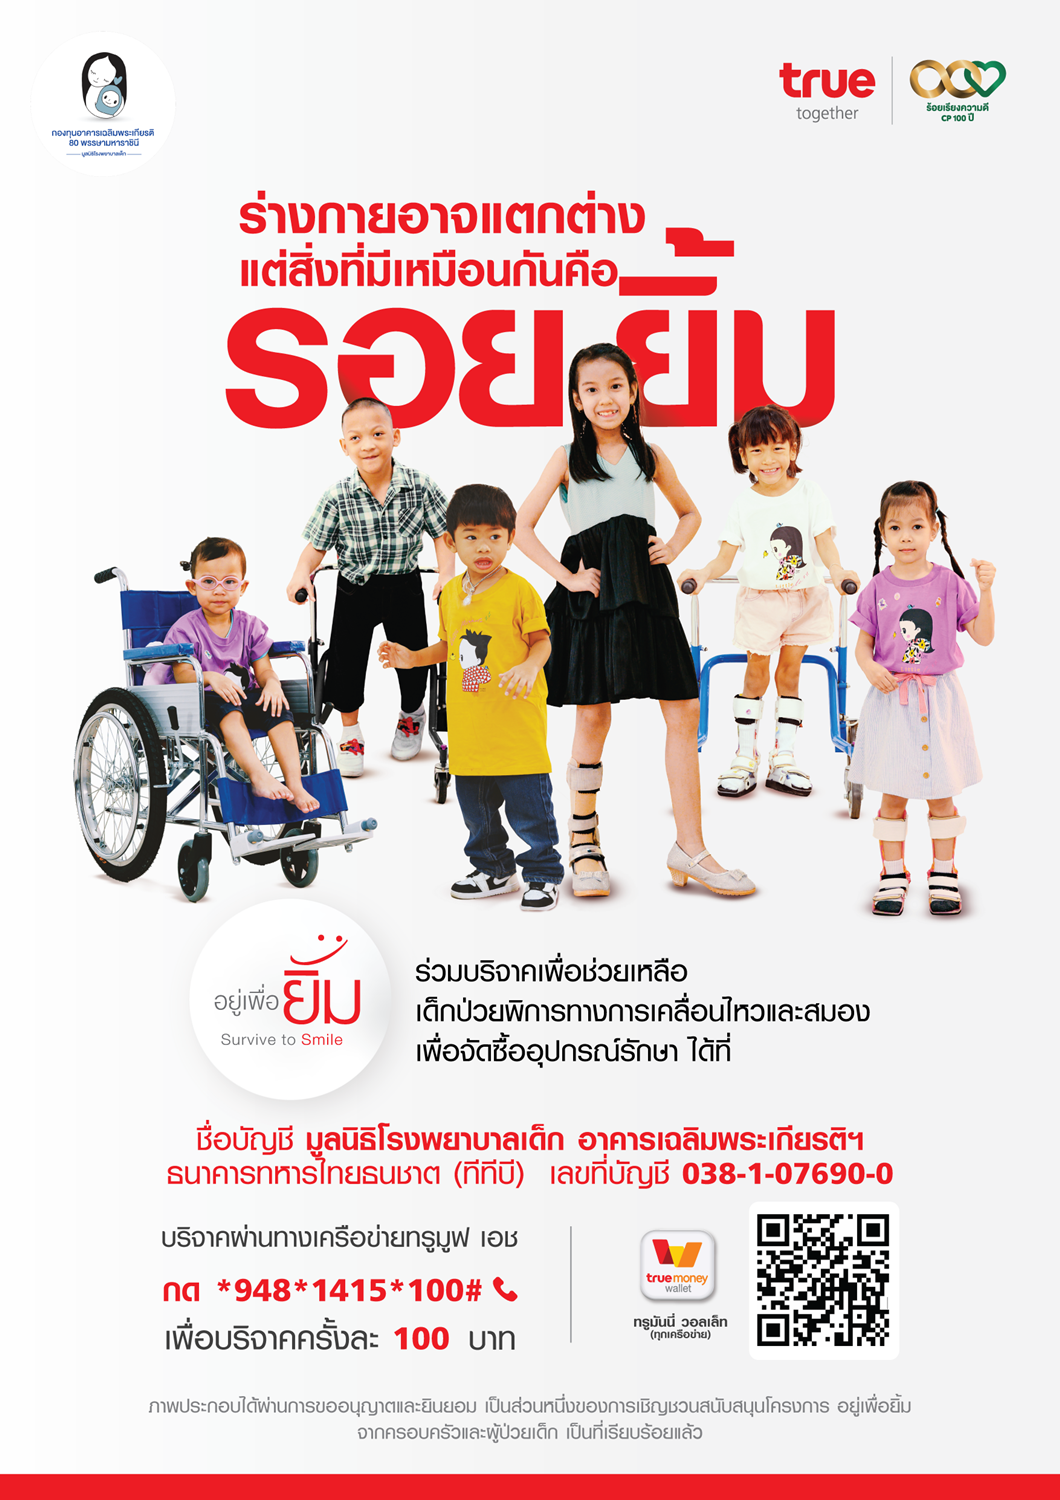 ทุกลมหายใจมีคุณค่า...กลุ่มทรูจับมือ มูลนิธิโรงพยาบาลเด็ก สานต่อโครงการ "อยู่เพื่อยิ้ม Survive to Smile" เชิญชวนคนไทยและลูกค้ากลุ่มทรู ร่วมบริจาคสมทบทุนเด็กป่วยพิการทางการเคลื่อนไหวและสมอง